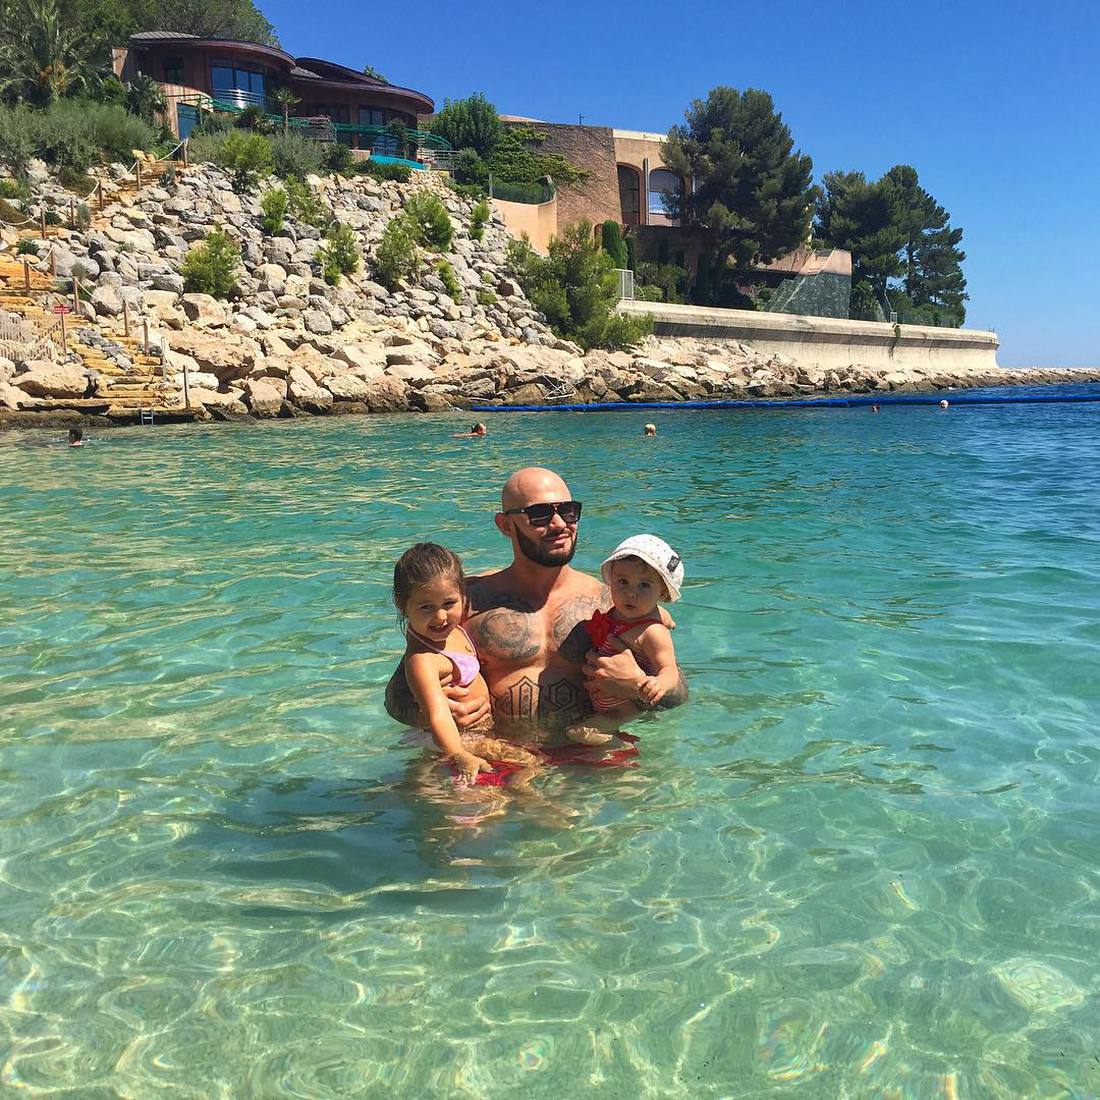 Джиган и Оксана Самойлова с дочерьми ни в чем себе не отказывают в Монако